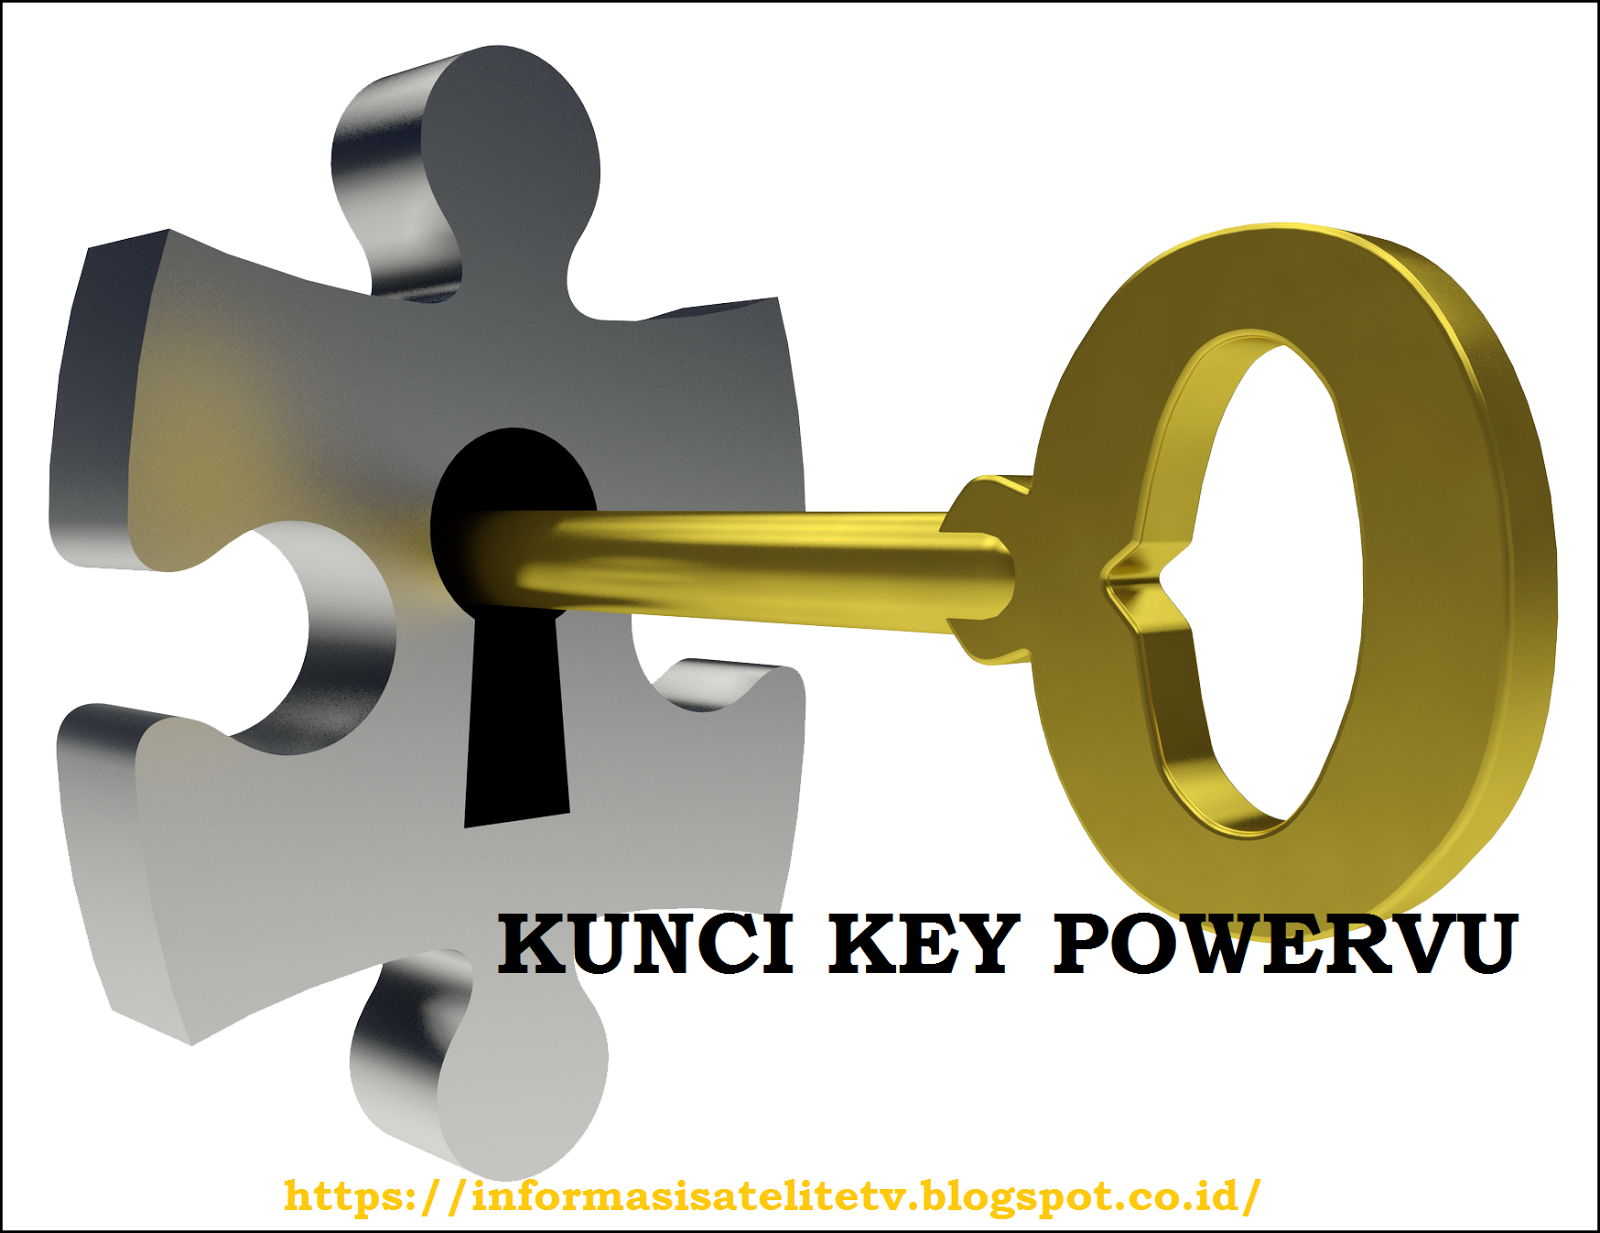 key power VU